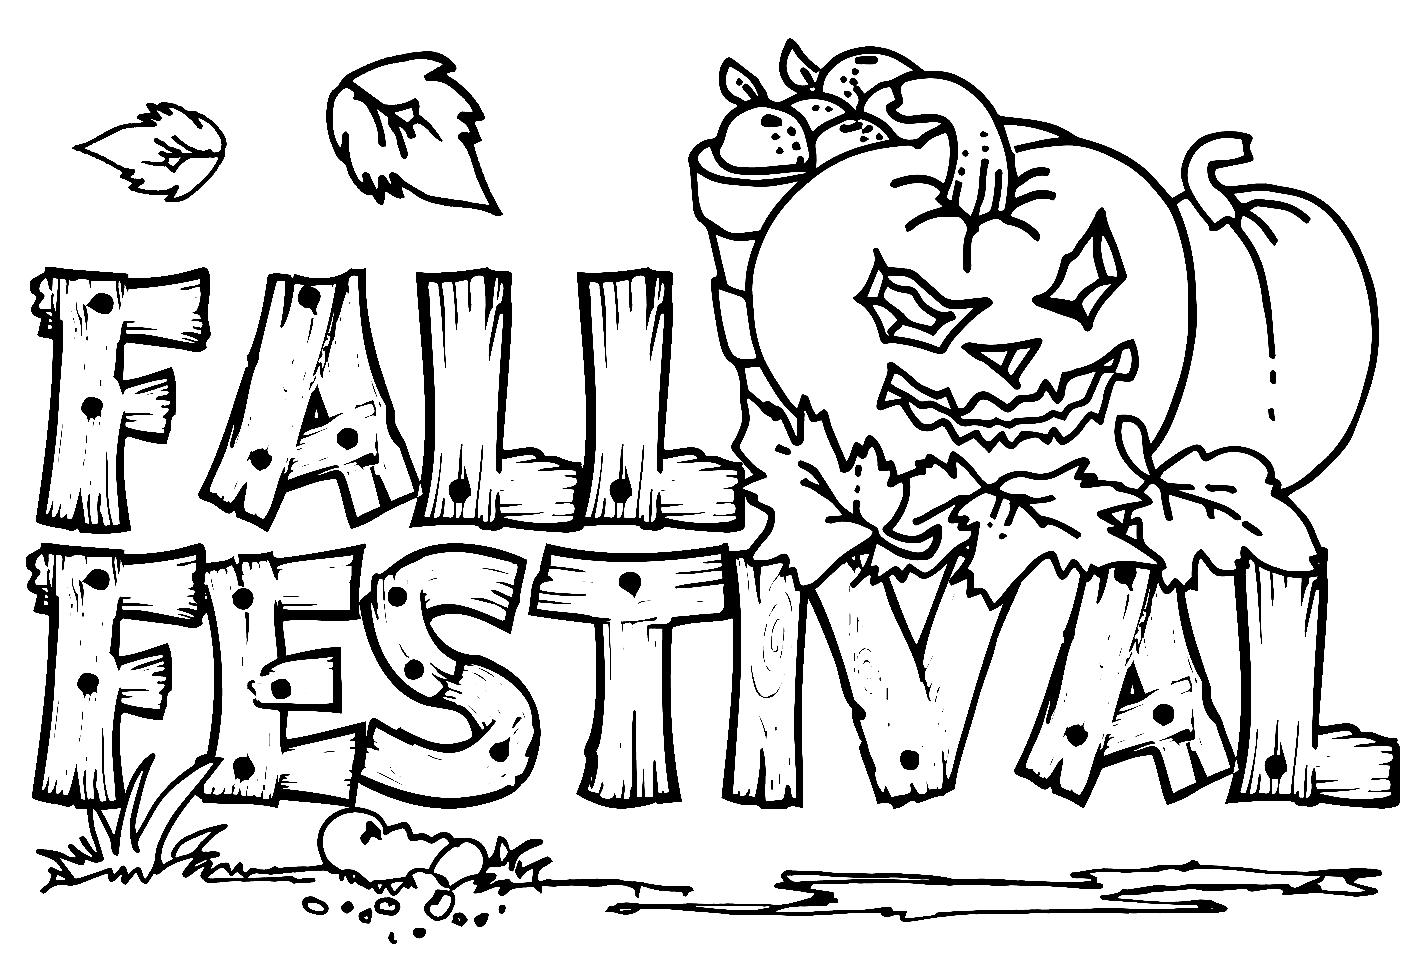 Herbstfest vom Festival